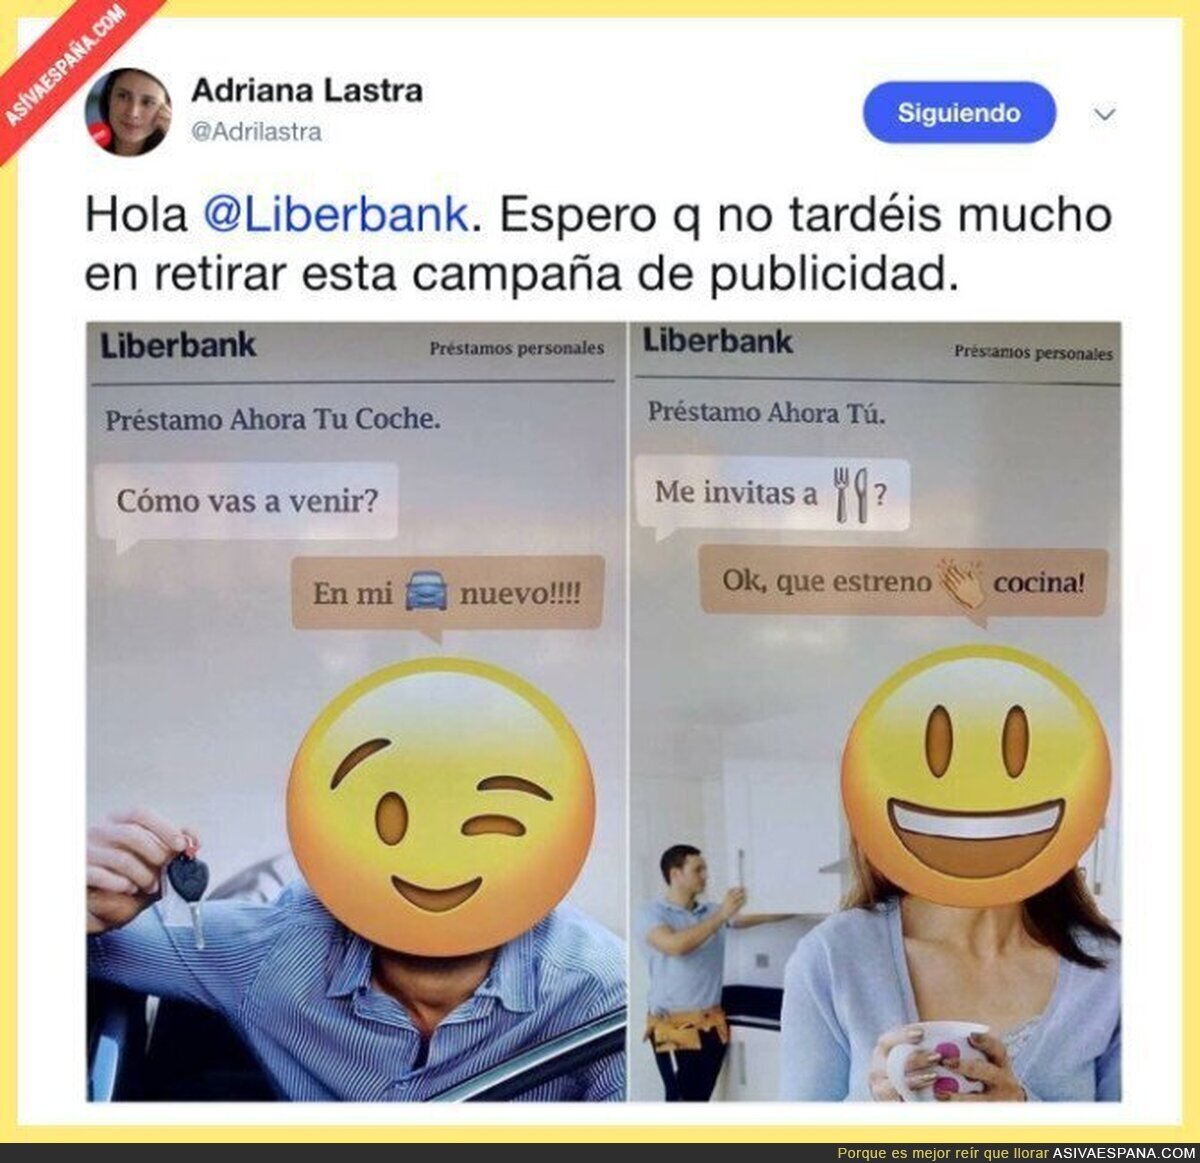 La vergonzosa publicidad de Liberbank que está indignando a mucha gente